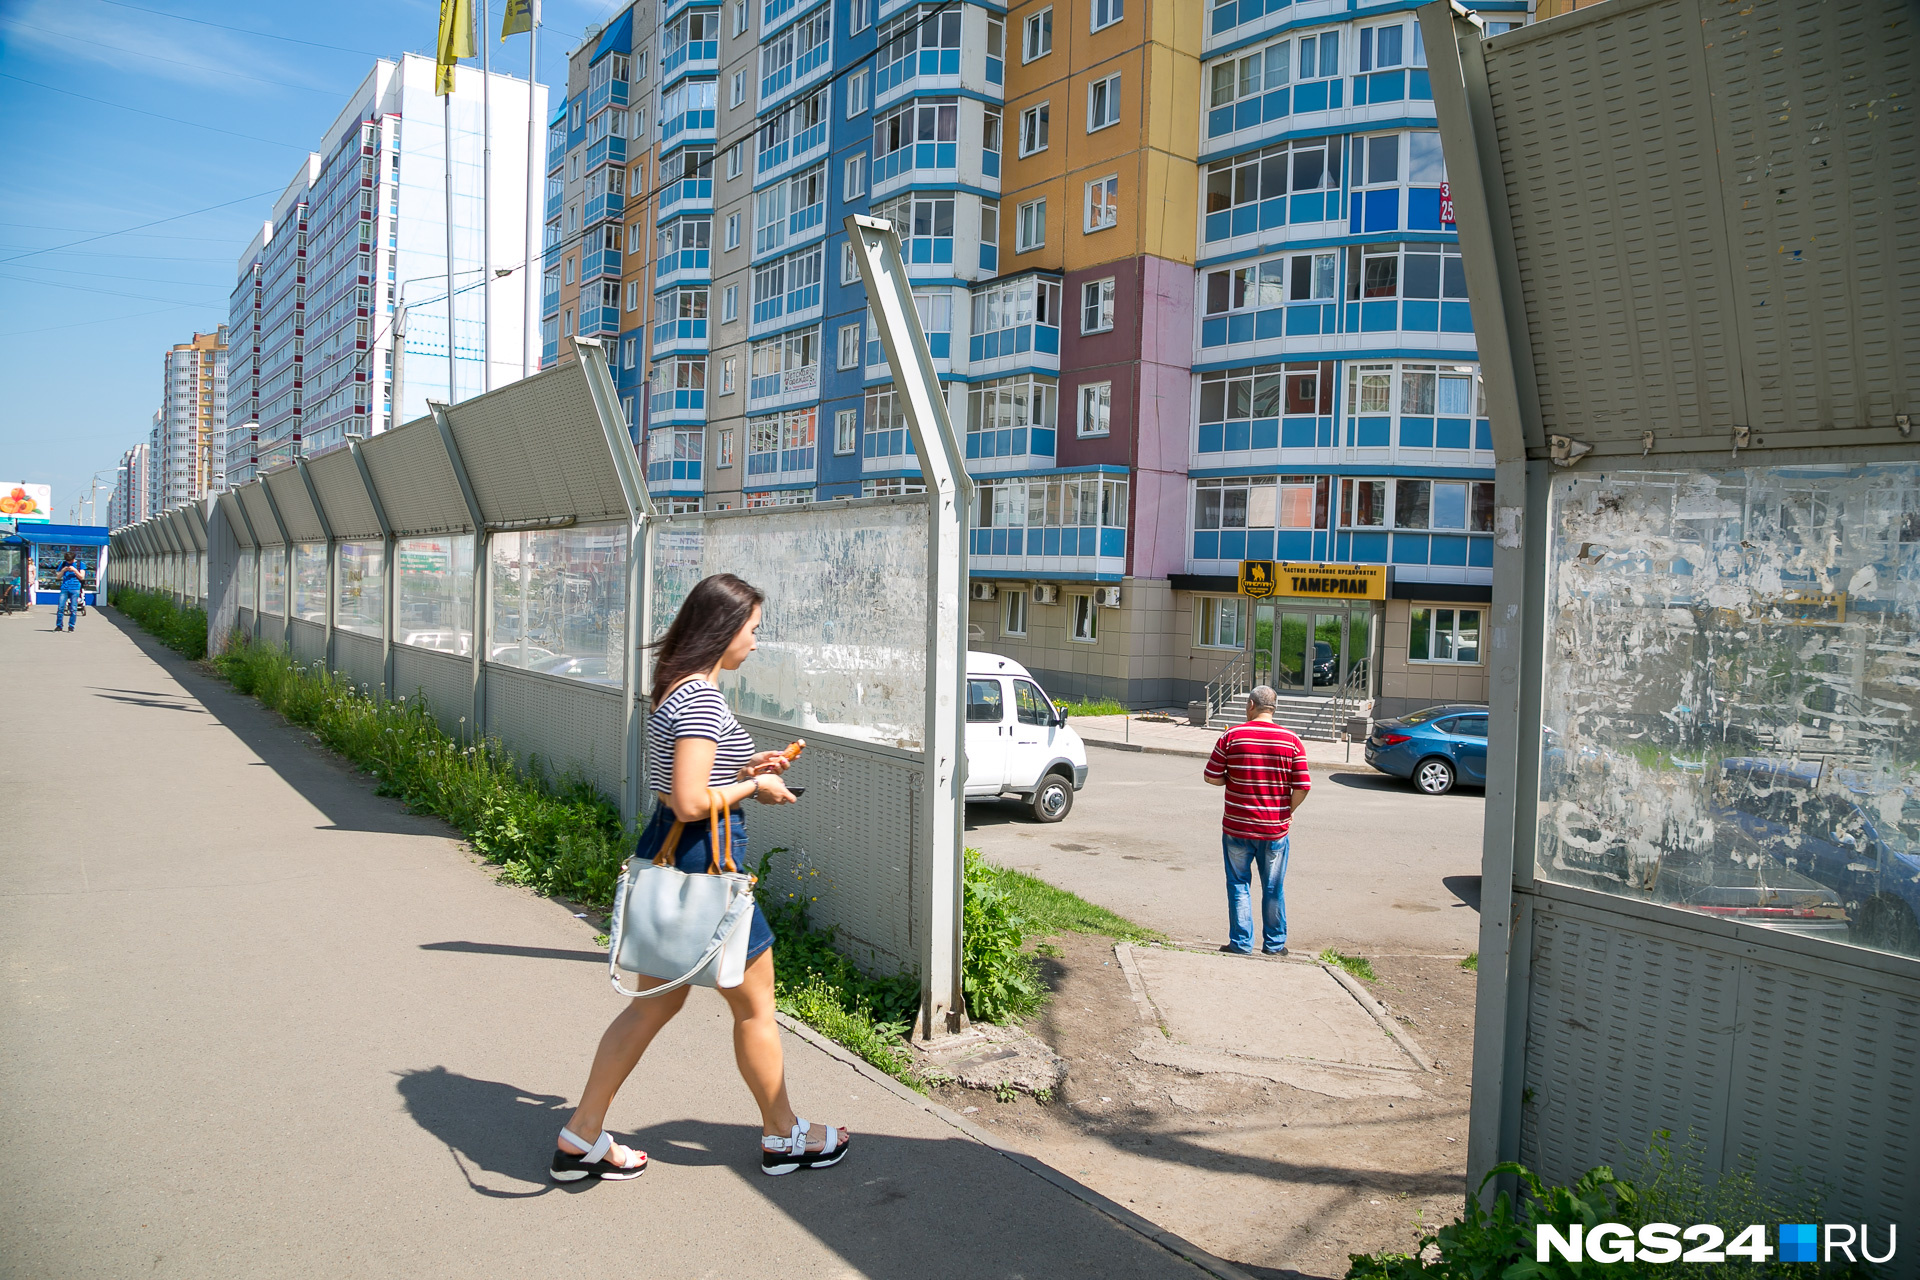 Огромные шумоизоляционные экраны вдоль дорог — одна из главных достопримечательностей «Покровского». Они окружают все широкие здешние магистрали